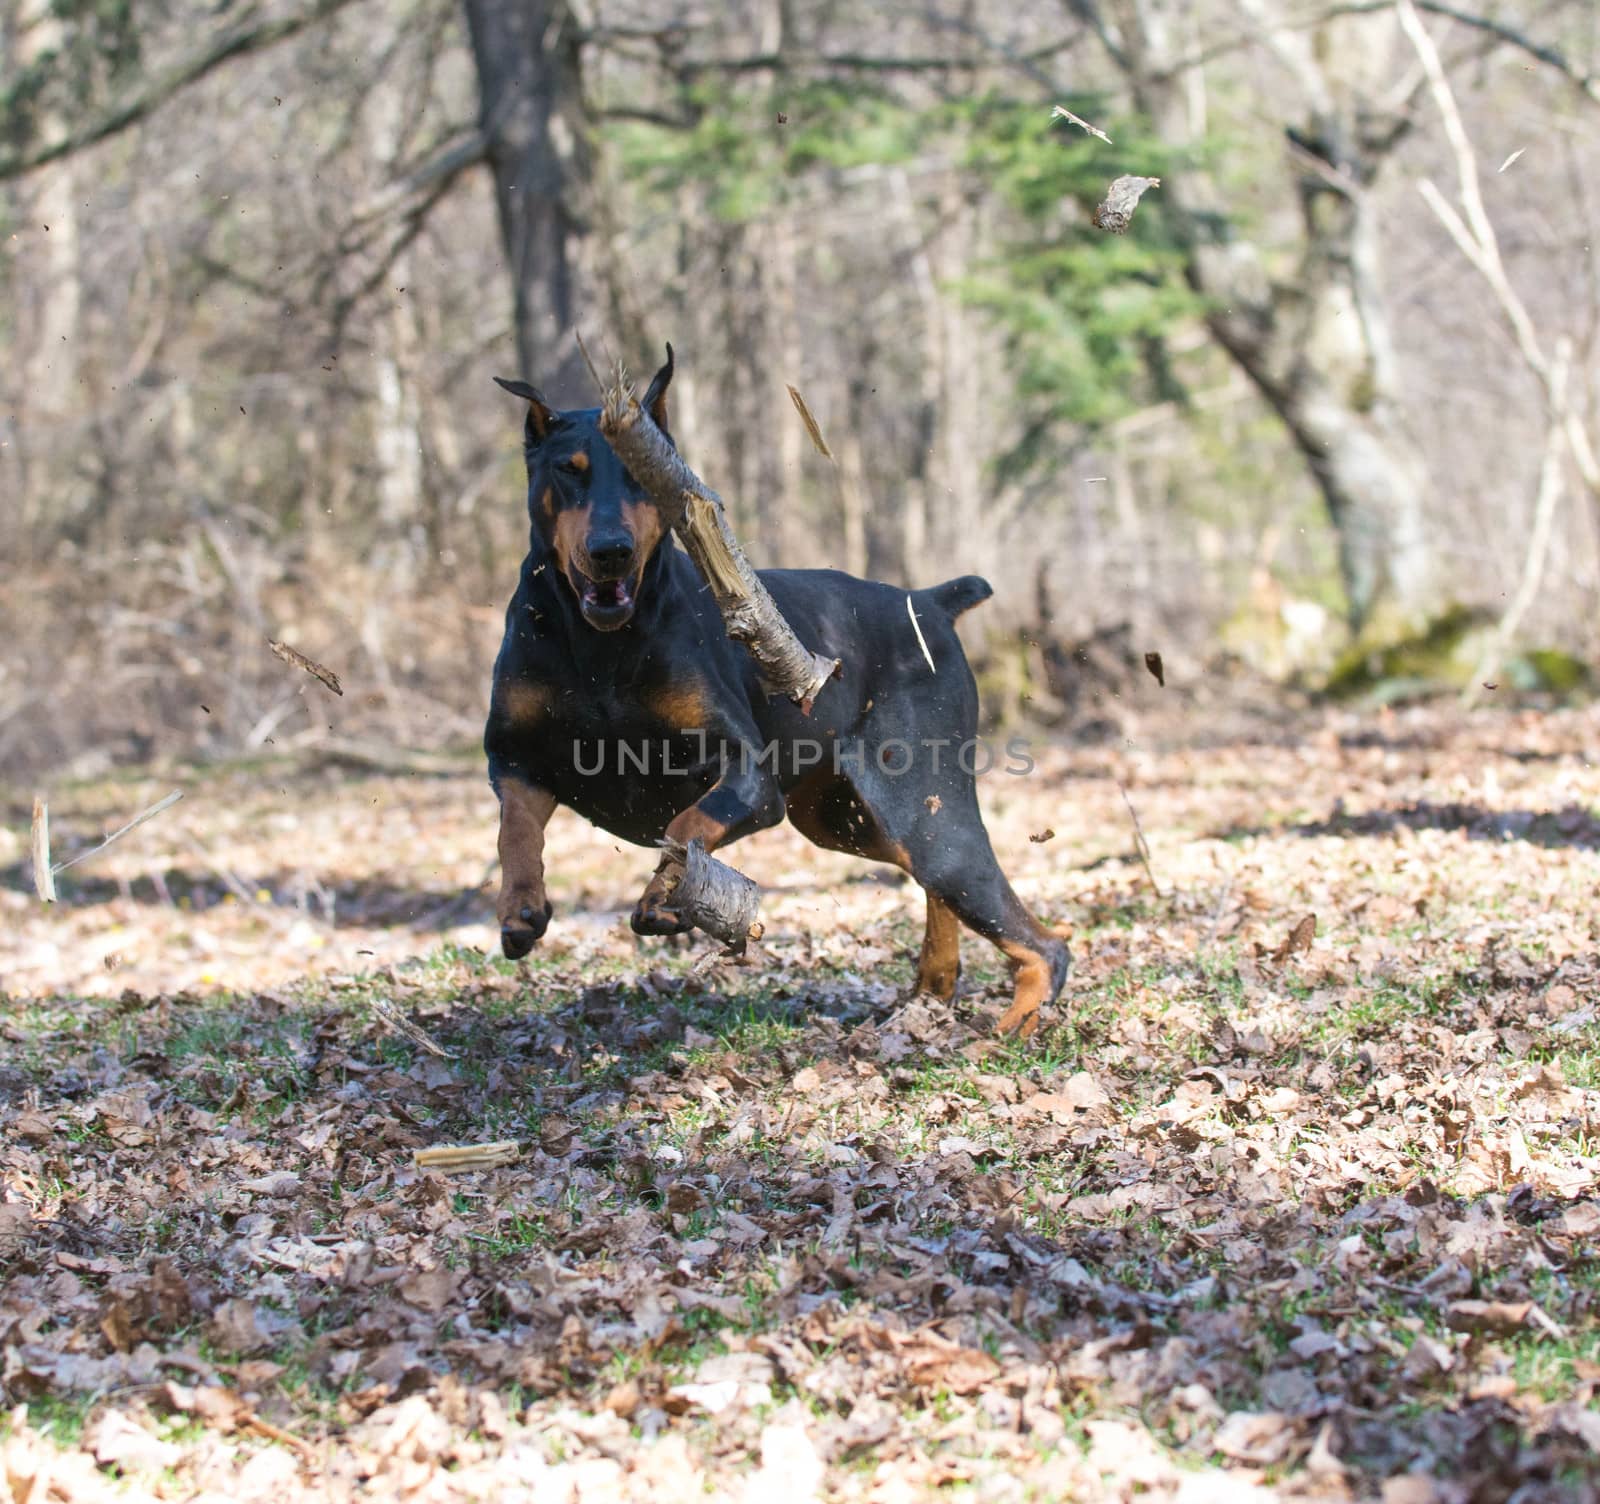 doberman pinscher chasing a wood stick midair in the park